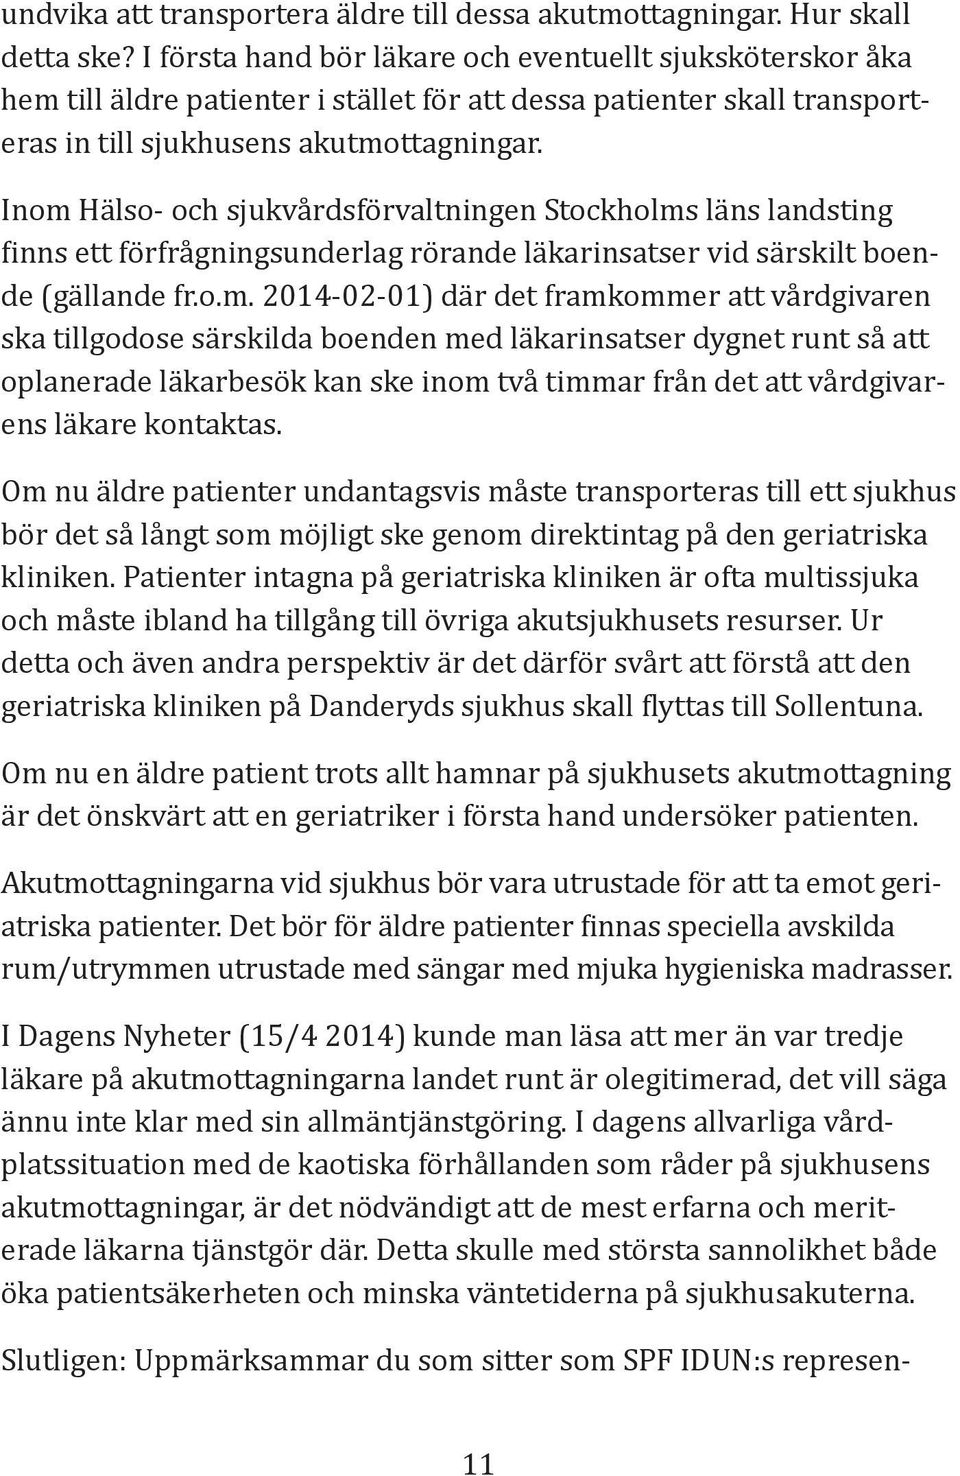 Inom Hälso- och sjukvårdsförvaltningen Stockholms läns landsting inns ett förfrågningsunderlag rörande läkarinsatser vid särskilt boende (gällande fr.o.m. 2014-02-01) där det framkommer att